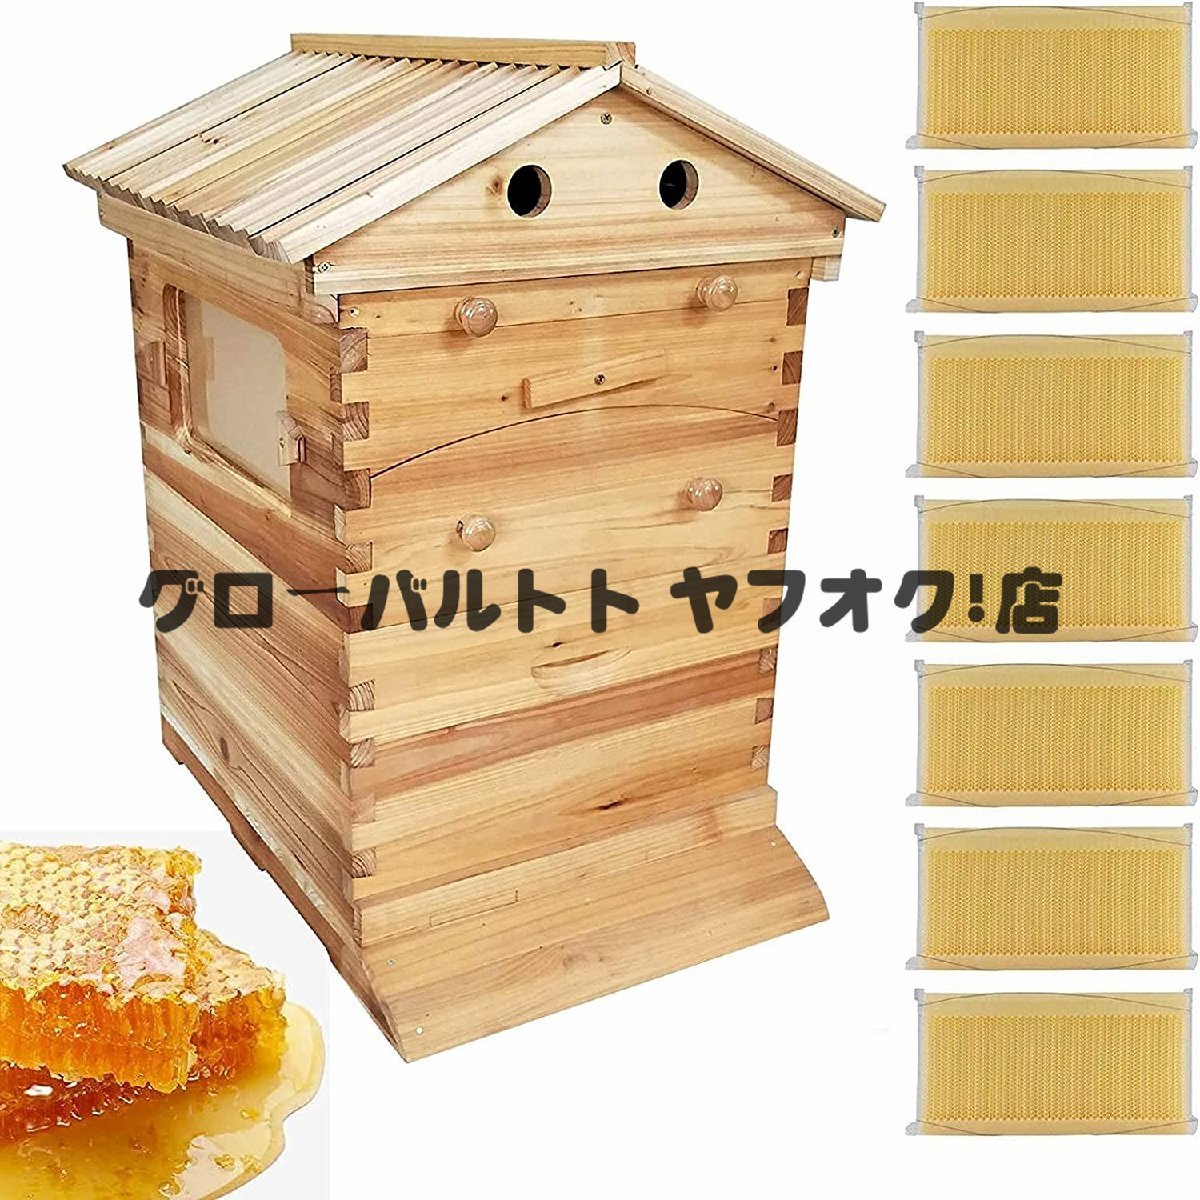 低価格で大人気の ミツバチ巣箱 蜜蜂巣箱 好評 蜜蜂飼育箱 D124 養蜂用具 自動フレーム 巣脾 巣礎 ミツバチの採蜜 ミツバチ養殖 ミツバチ飼育箱 蜂の巣 飼育ケース